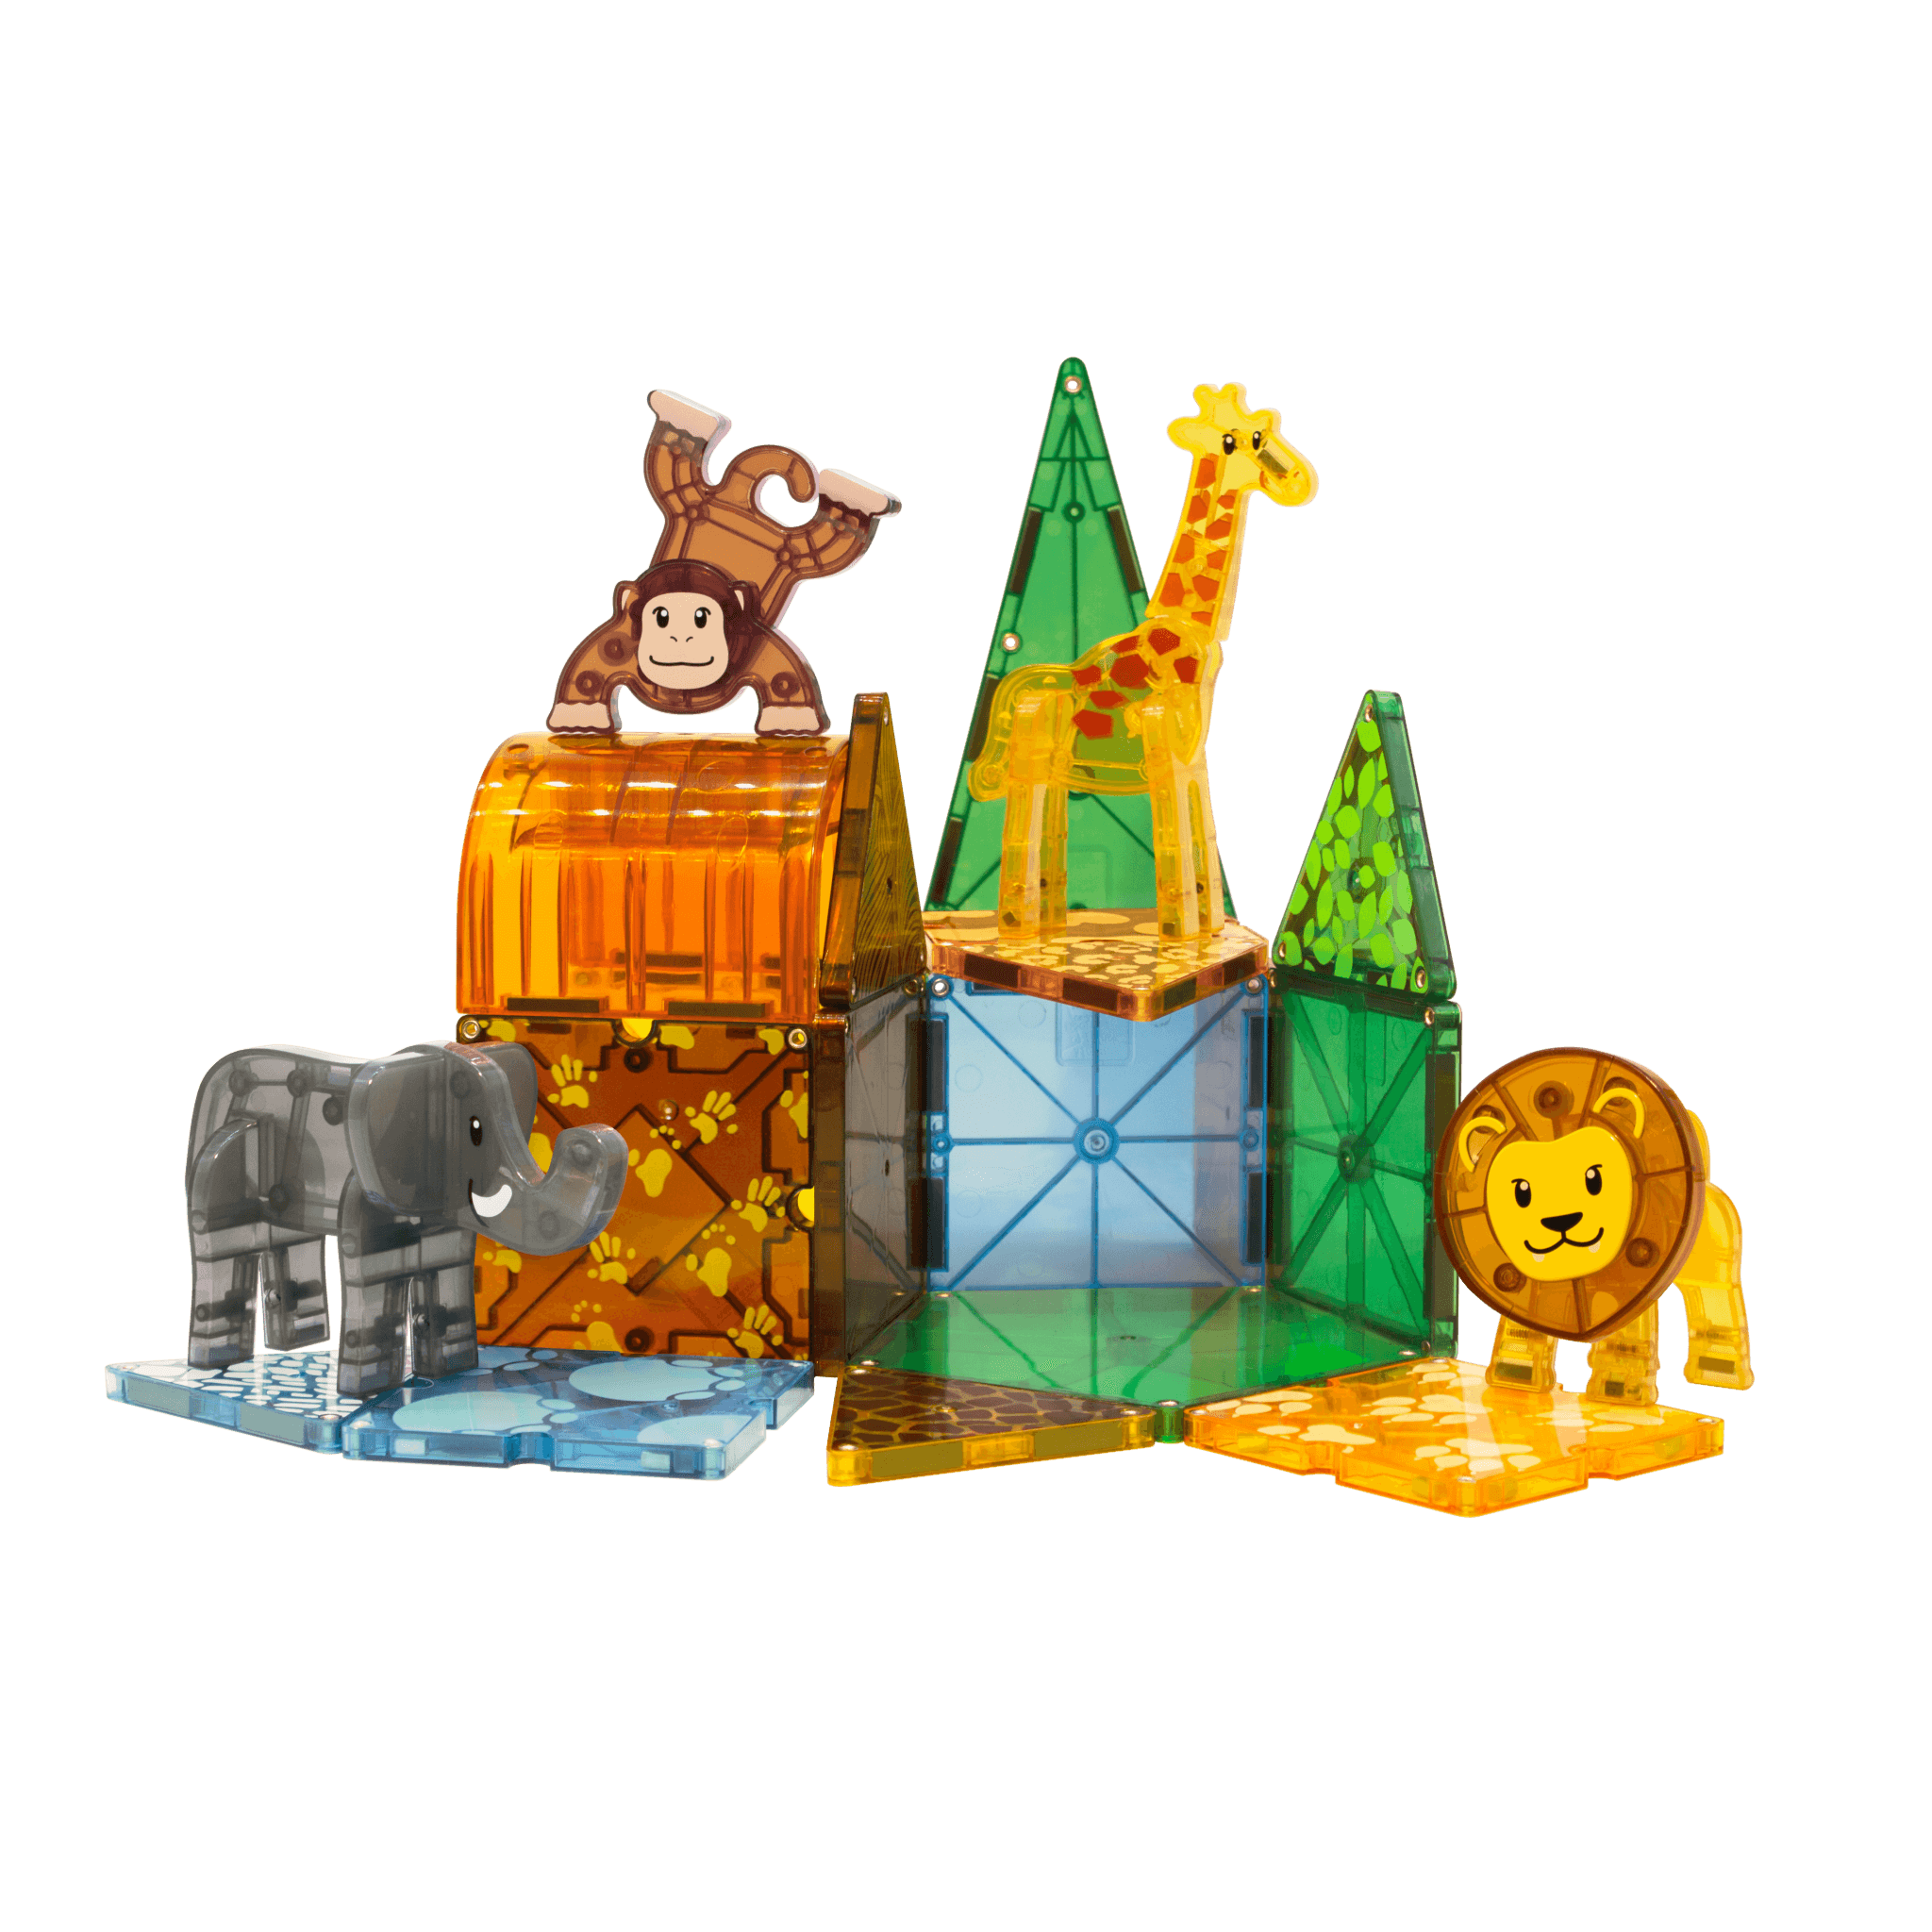 Magna-Tiles-Magna-Tiles Safari Animals 25 Piece set-20925-Legacy Toys